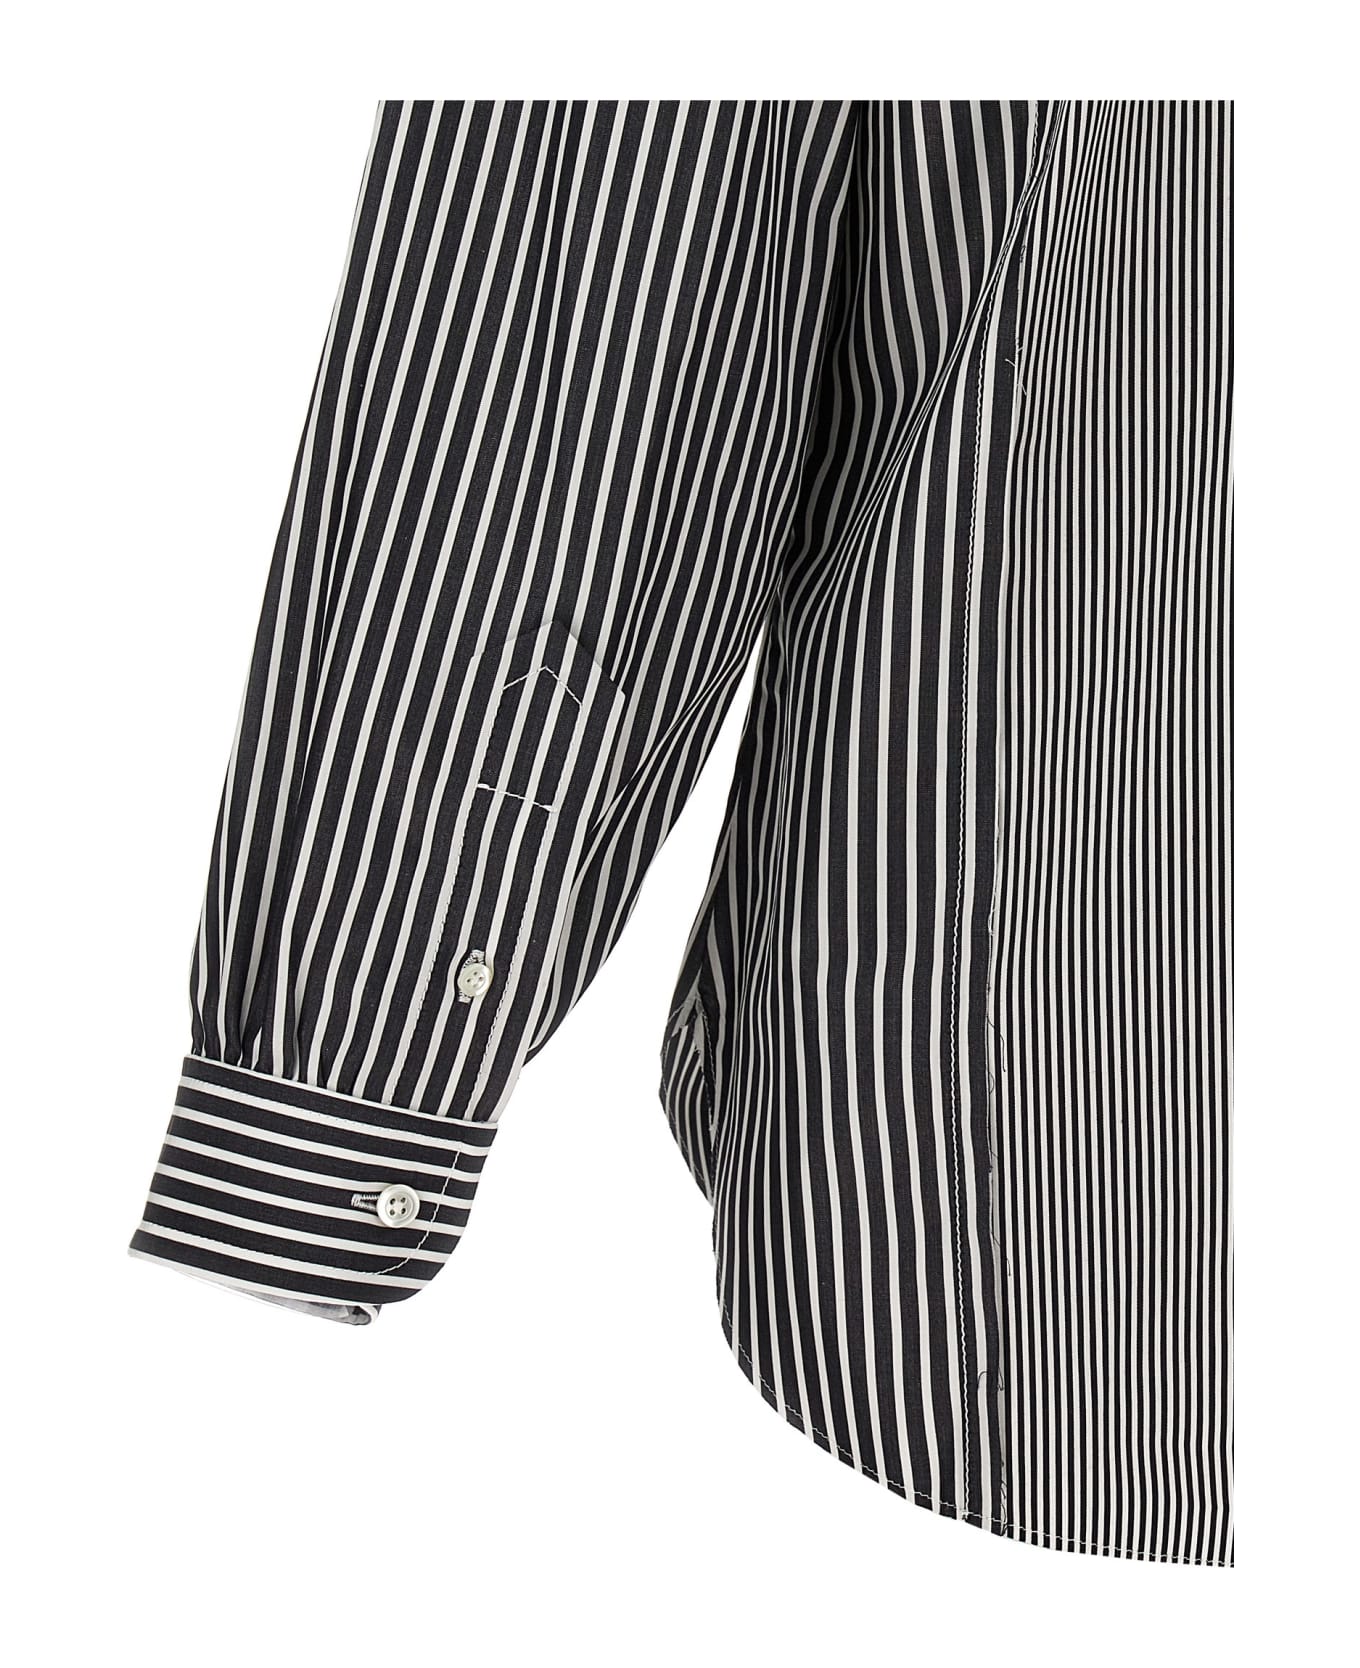 Maison Margiela Striped Cotton Shirt - White/Black シャツ